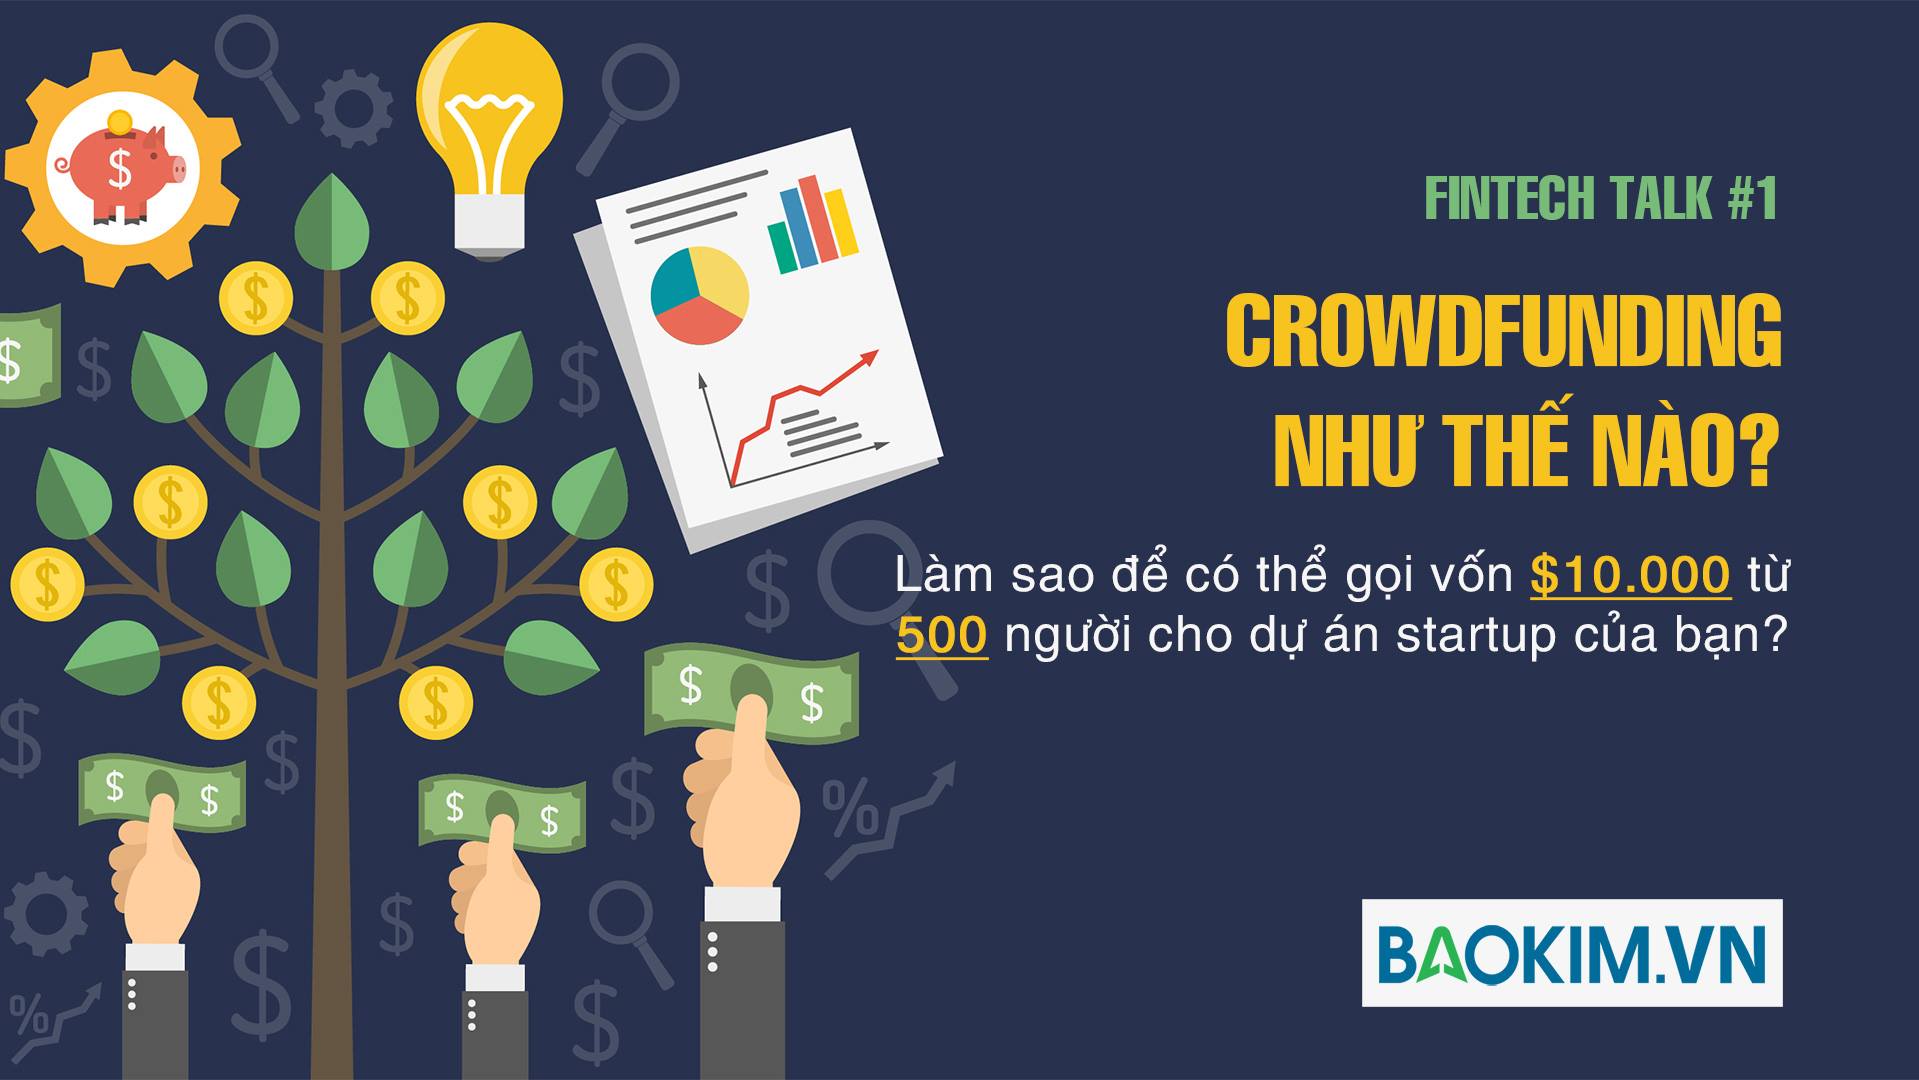 Crowdfunding Như Thế Nào – Fintech Talk 01